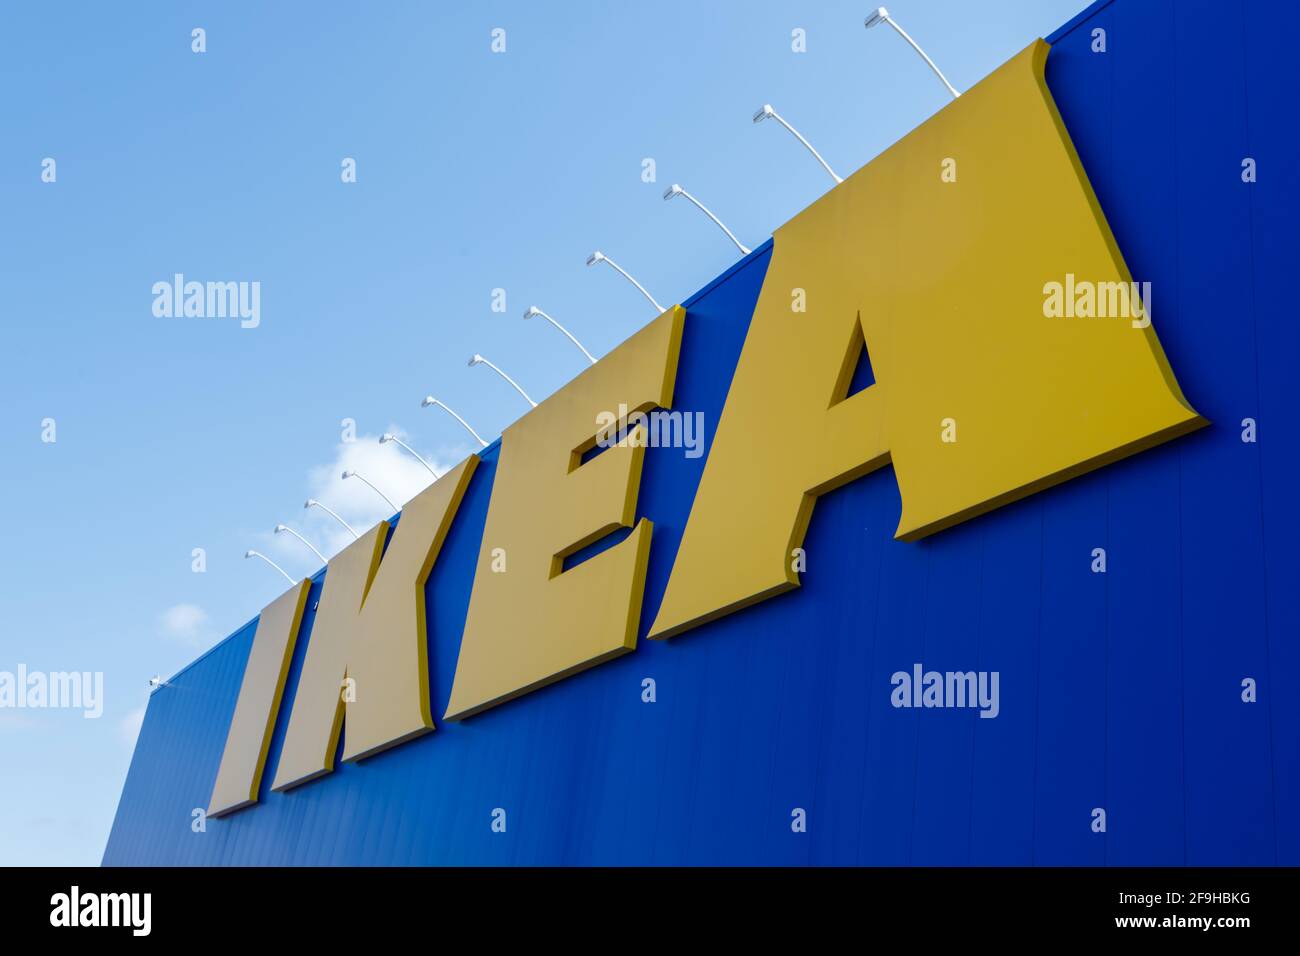 Ottawa, Ontario, Canada - 18 aprile 2021: Il logo IKEA è appeso come un grande cartello sul lato del negozio di mobili della catena svedese nella Pinecrest di Ottawa Foto Stock